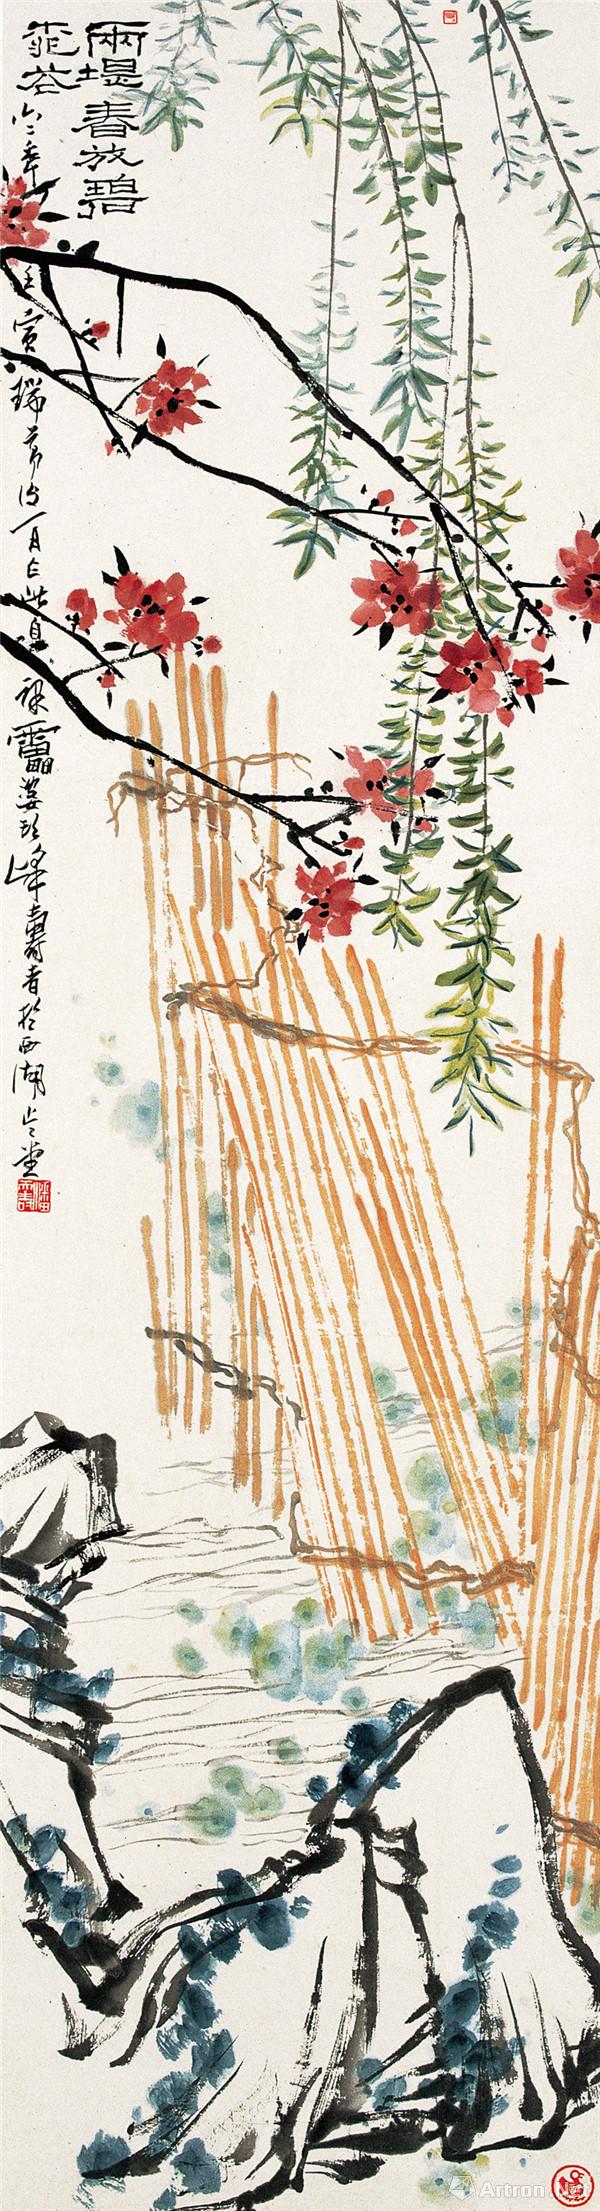 潘天寿 碧桃杨柳图 1962年 设色 177.5×48CM